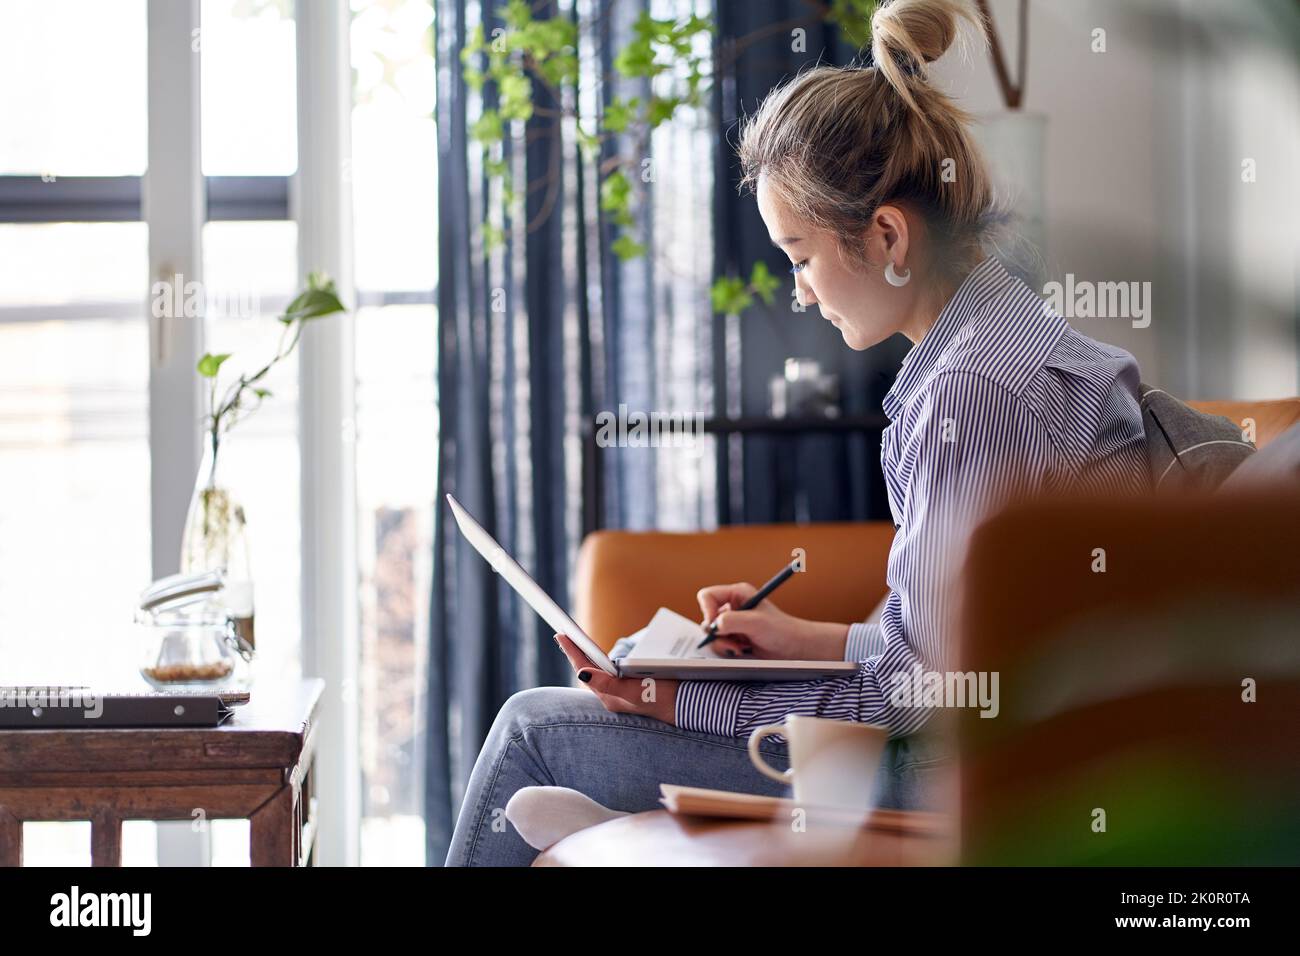 femme asiatique professionnelle mature travaillant sur un document papier de la maison à l'aide d'un ordinateur portable, vue latérale Banque D'Images